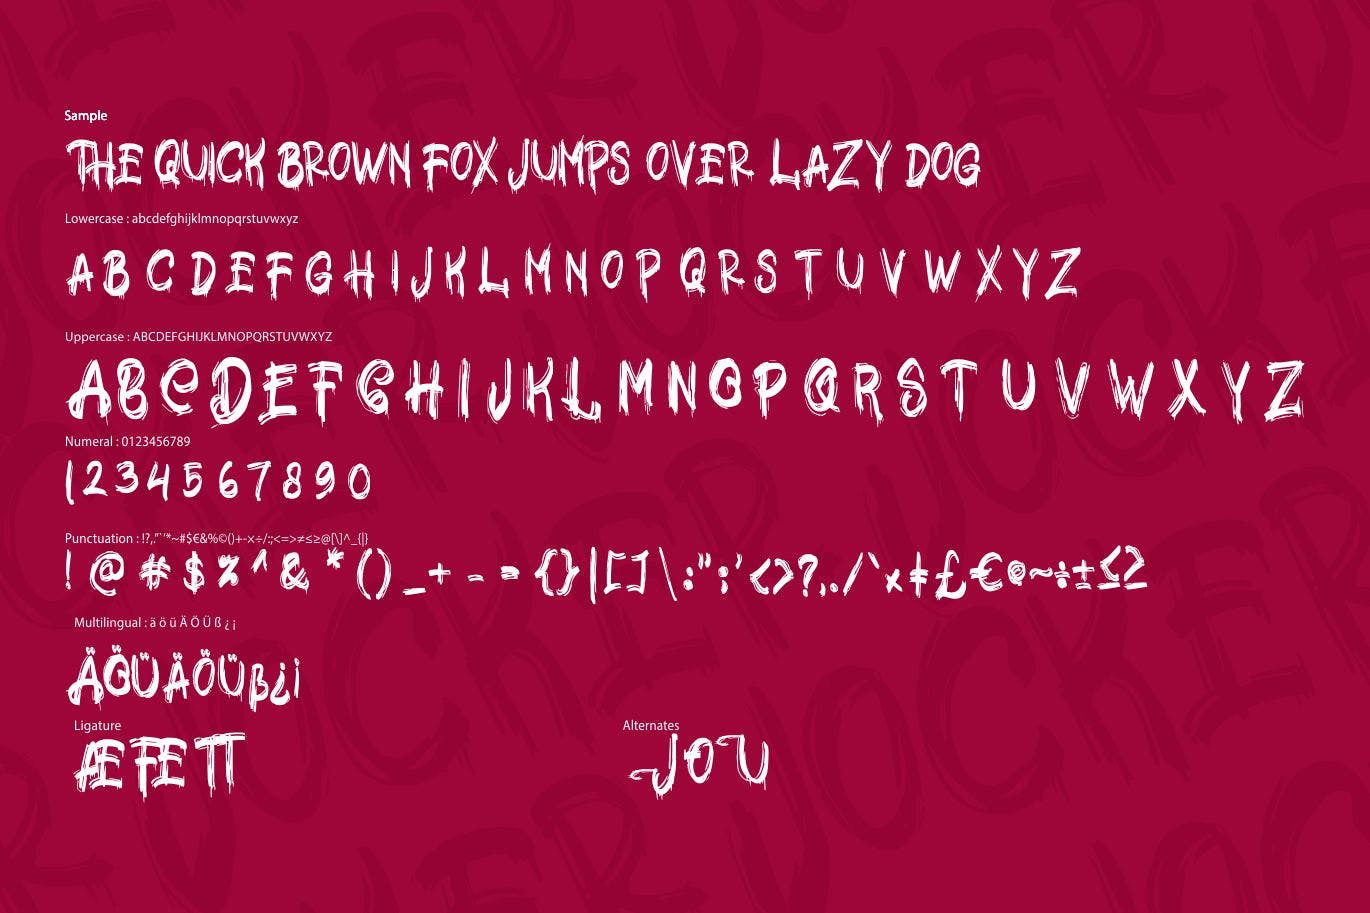 极具个性的英文笔刷装饰字体大洋岛精选 Jocker | Psychotype Font Theme插图5